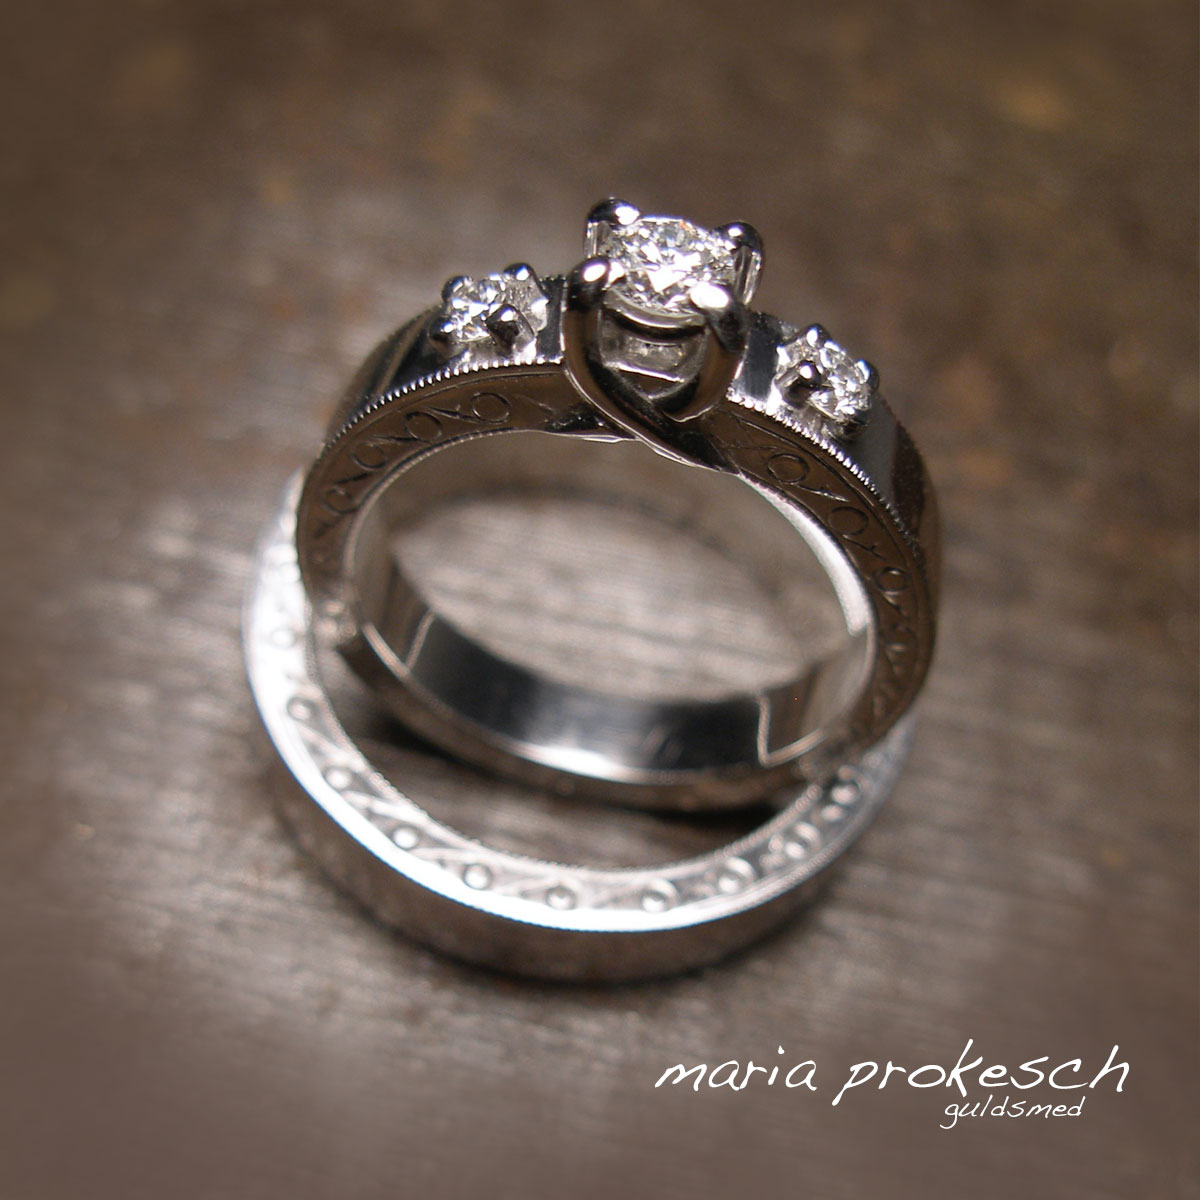 Retro design, håndlavede forlovelsesringe hvidguld 14 karat med mange detaljer. Ringe har repercé gravering på sider af ring. Damering med tre sten, hvide diamanter, i grabbe fatninger.